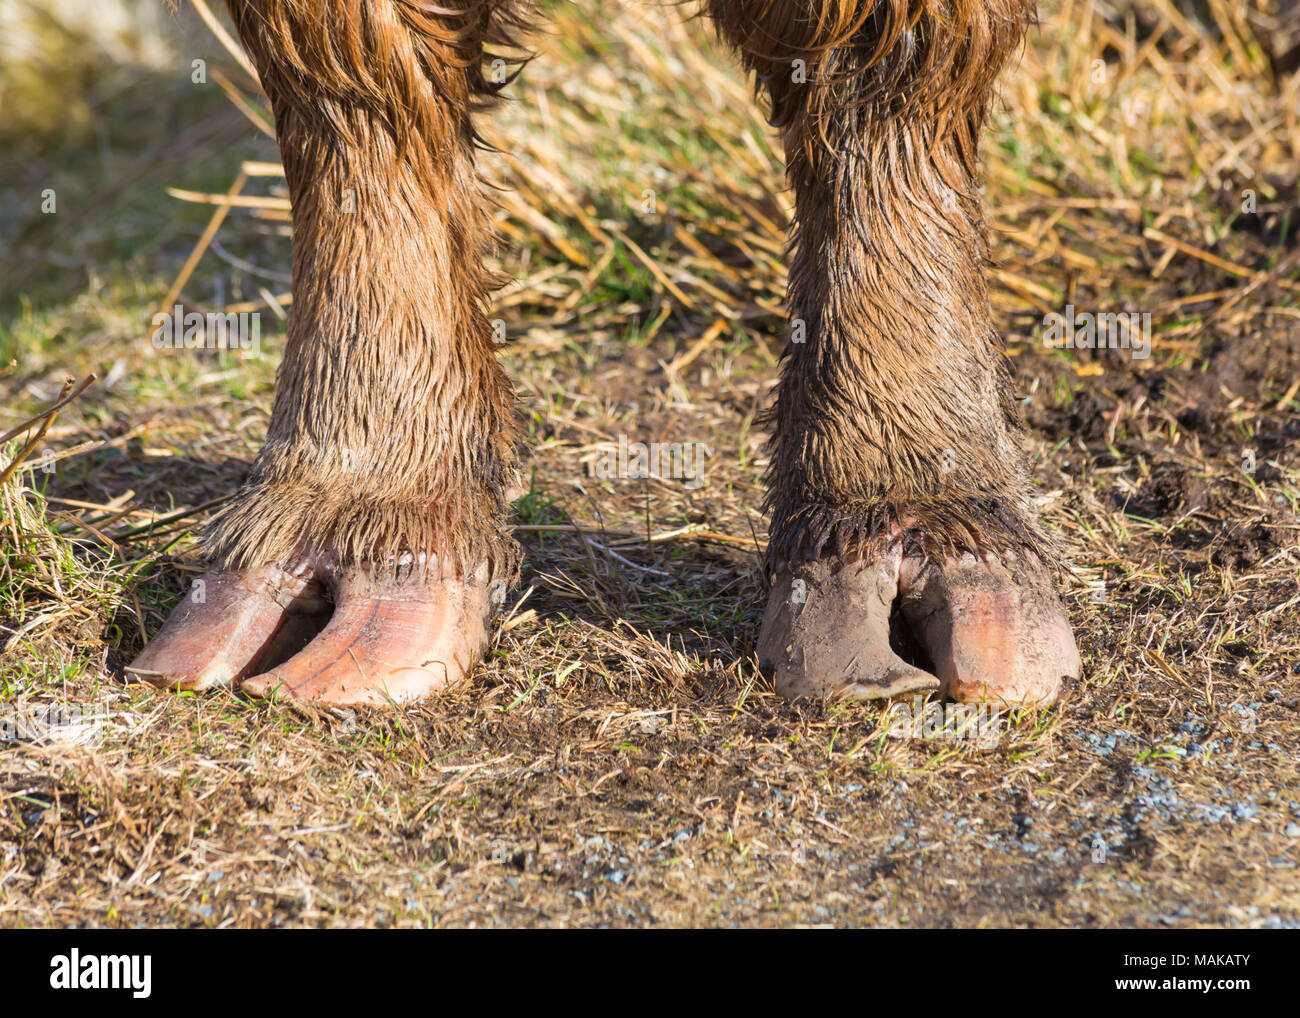 Cow feet immagini e fotografie stock ad alta risoluzione - Alamy